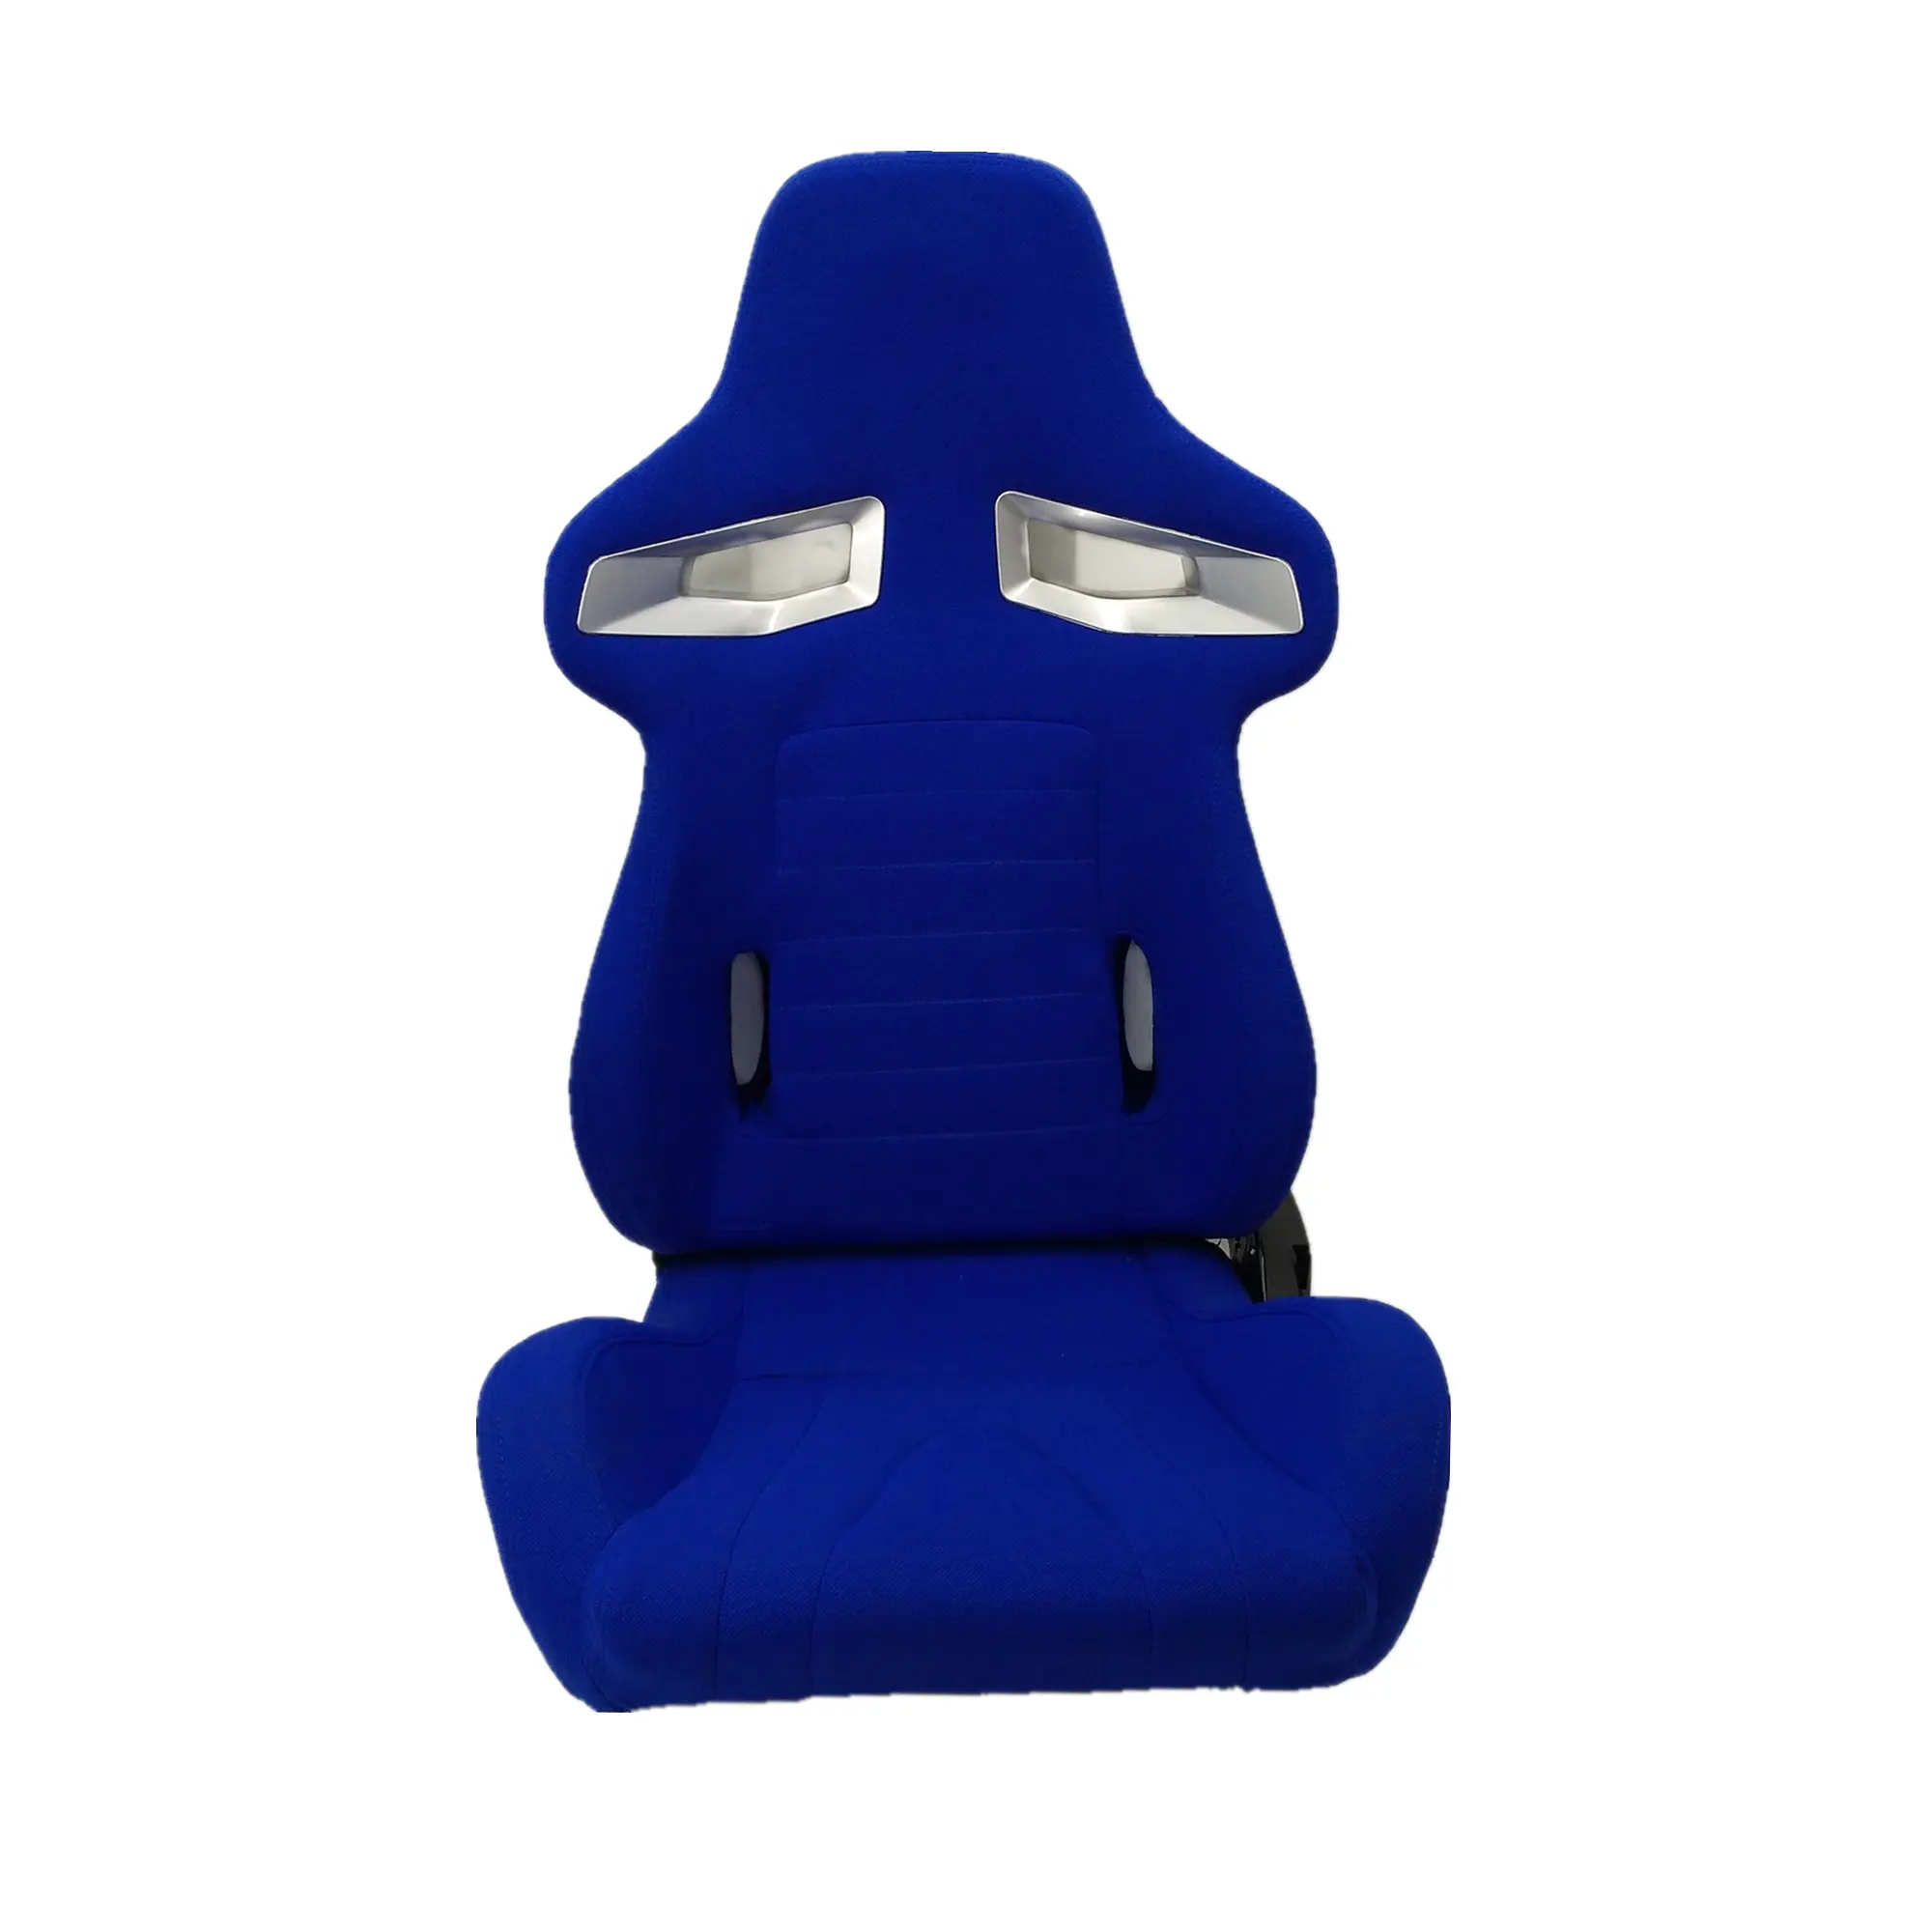 الأزرق الكامل قماش من الألياف نمط العربة قابلة للتعديل تعديل مركبة الرياضة سباق مقعد PS4 مع منزلق مزدوج JBR1069